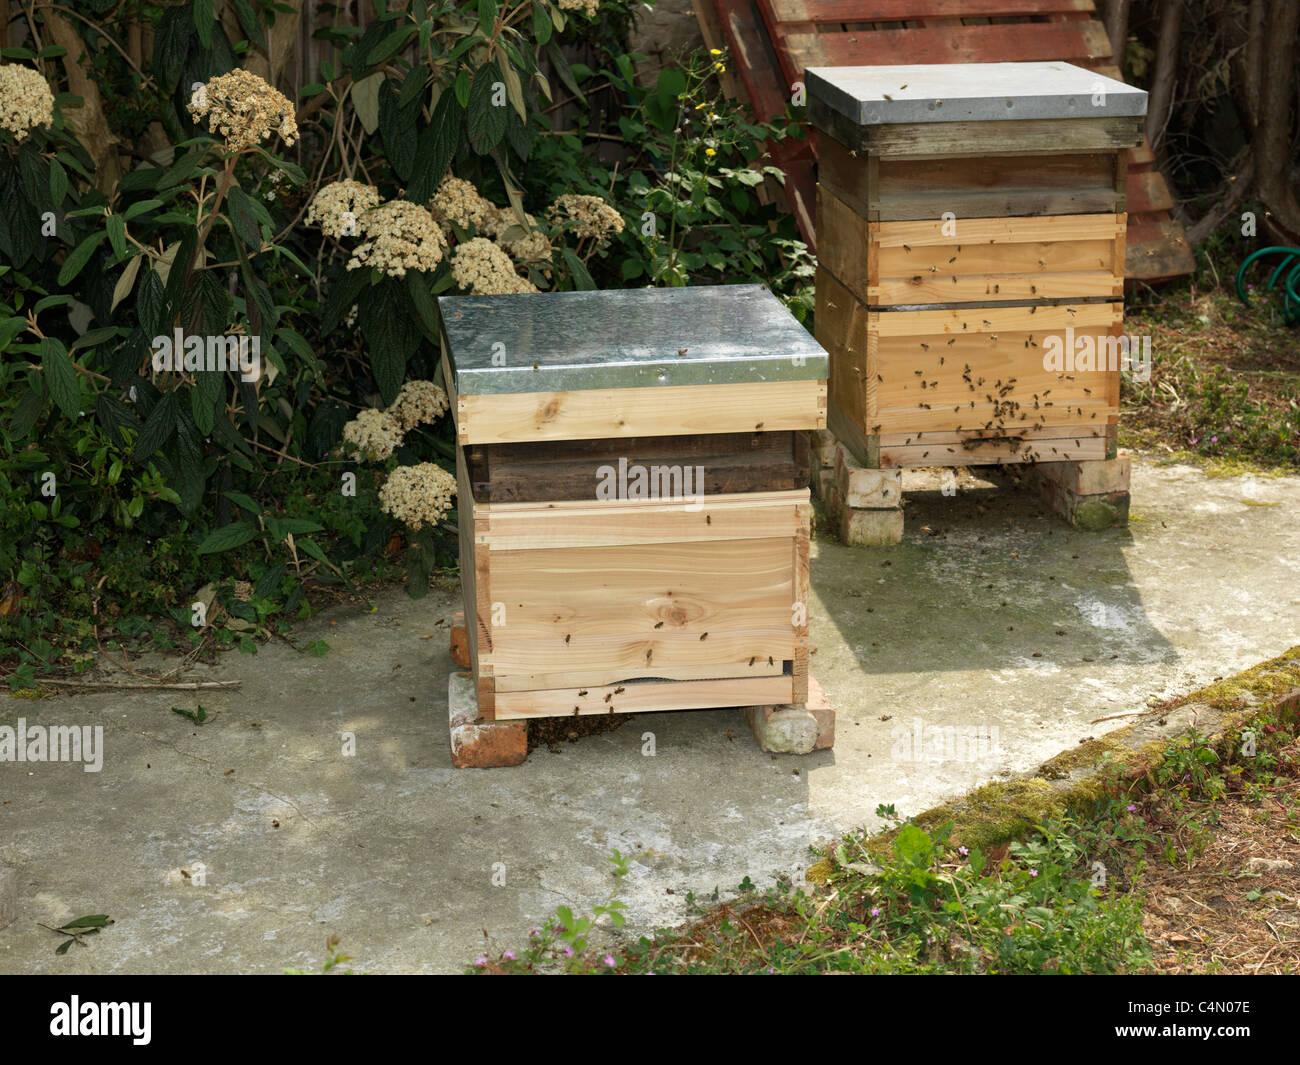 Deux Ruches pour le miel d'abeilles dans un jardin Banque D'Images